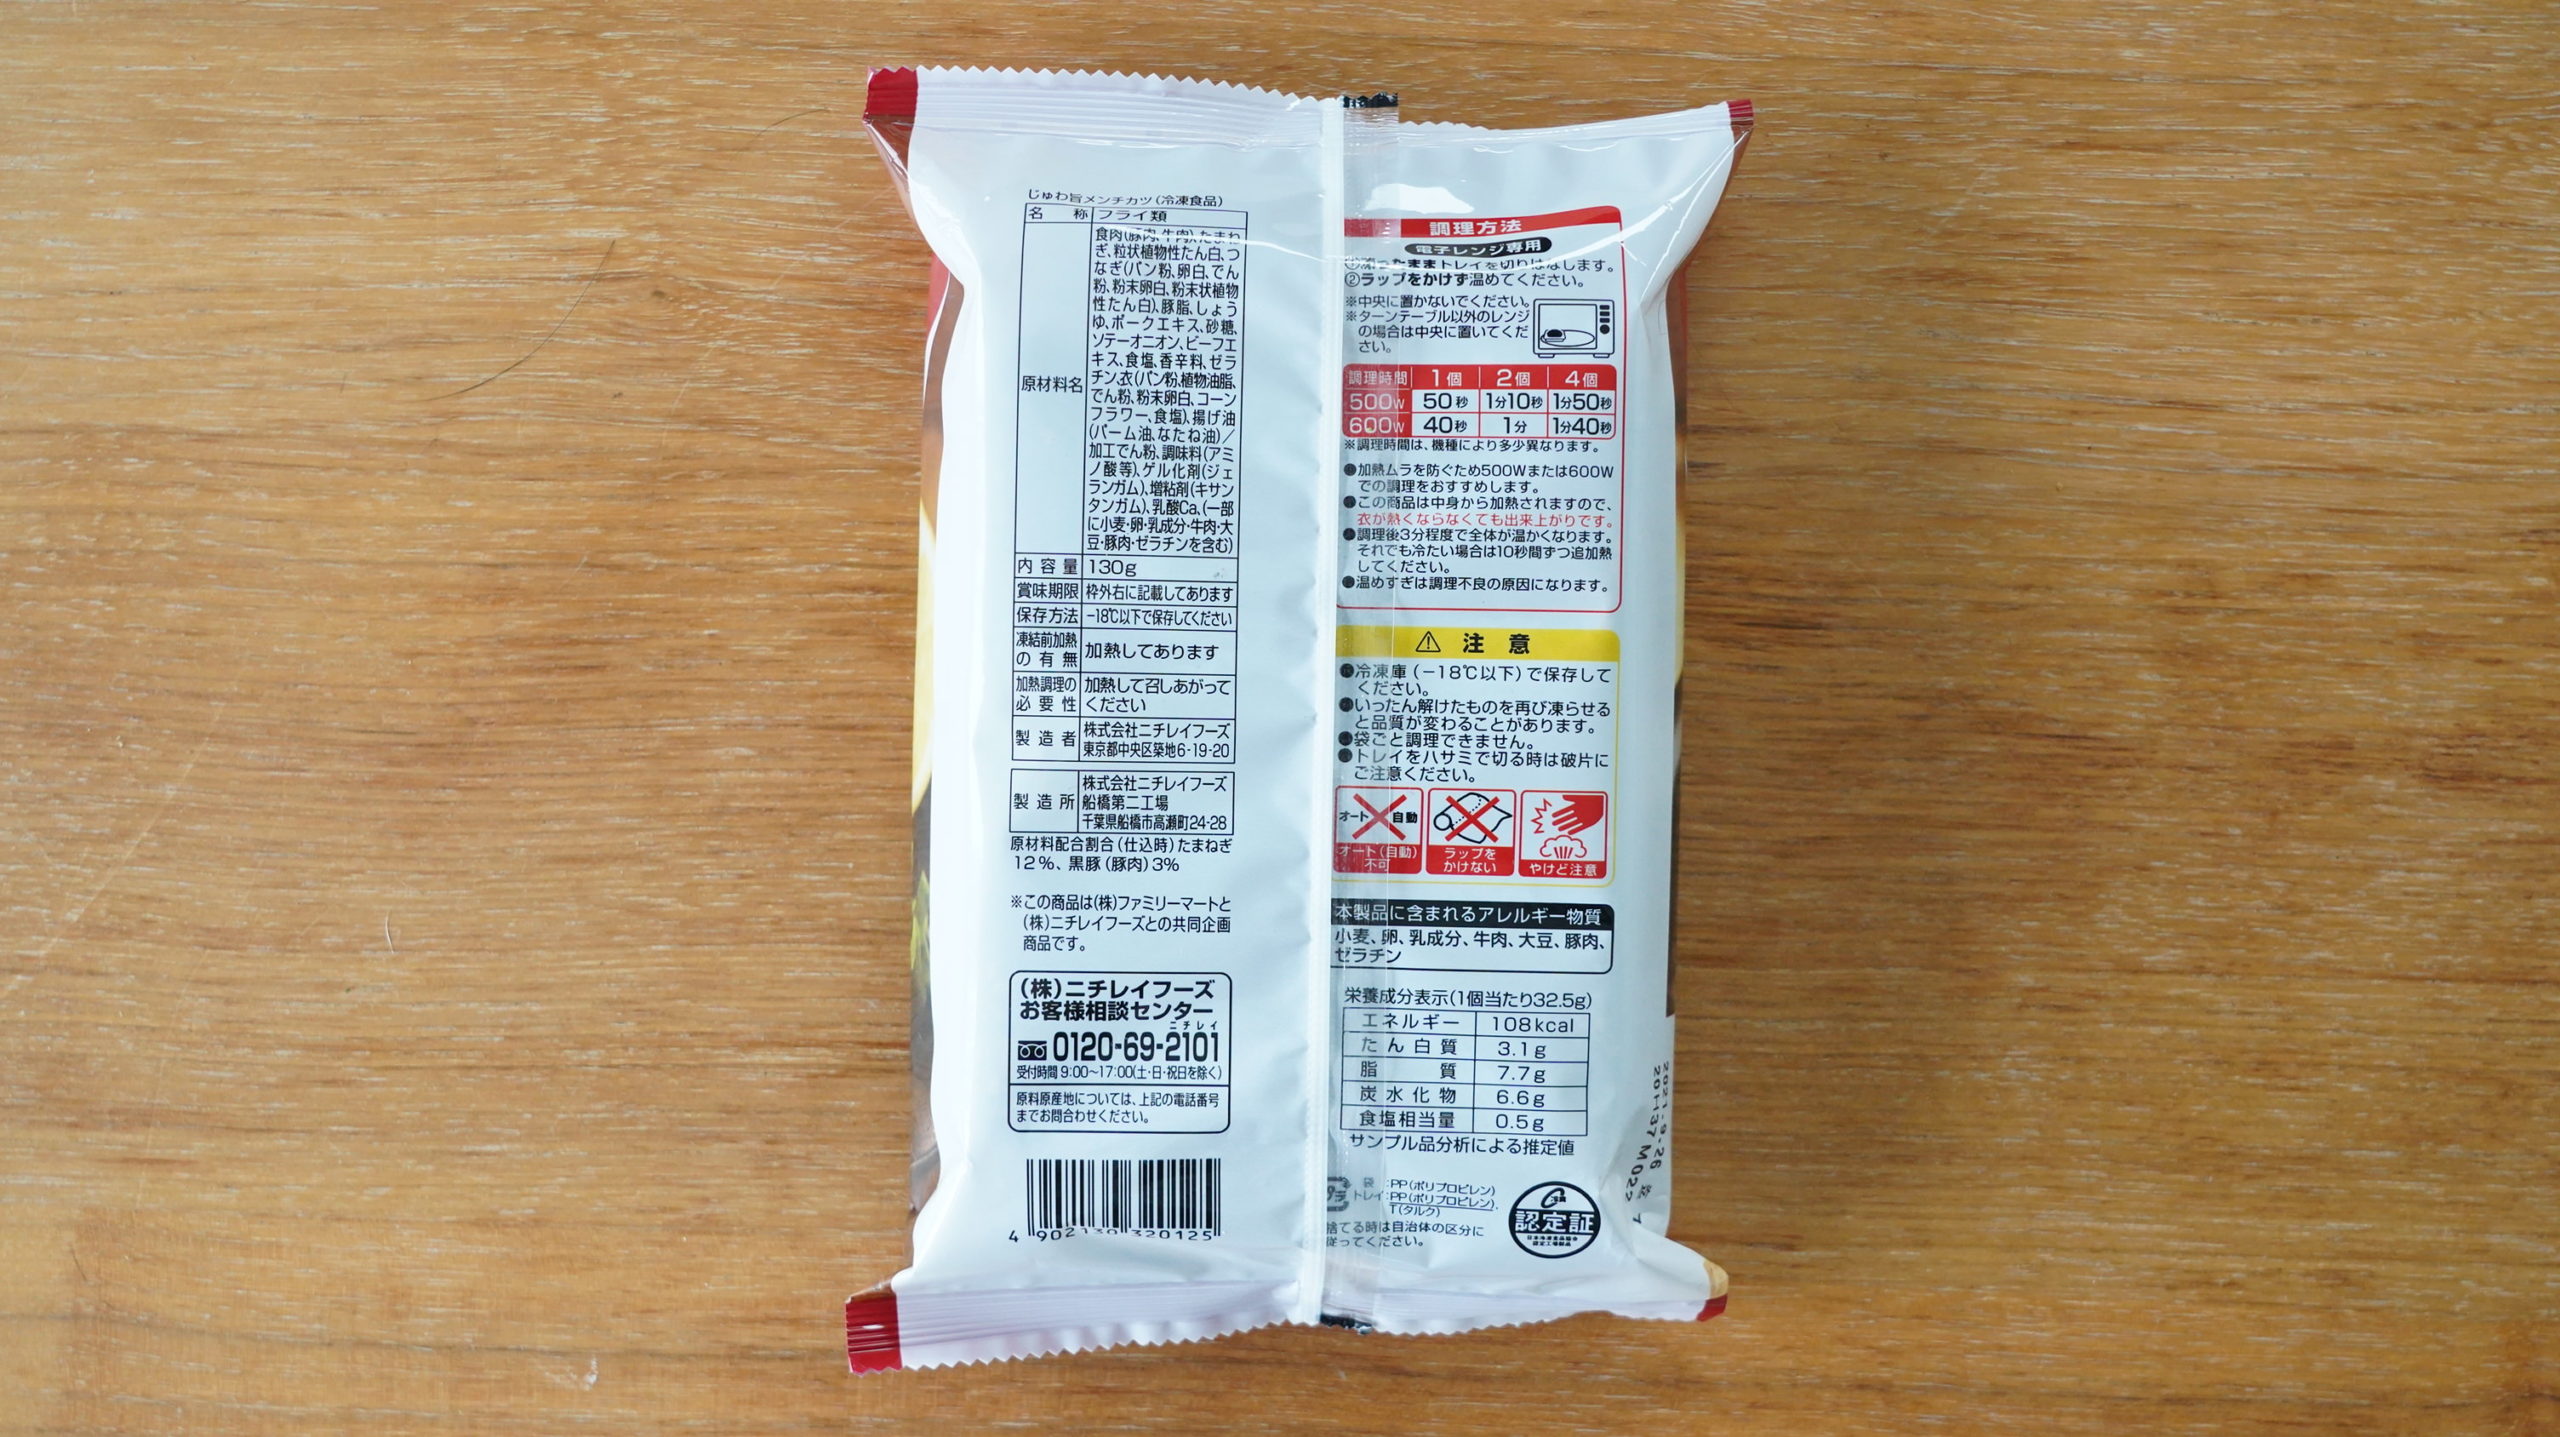 ファミリーマートの冷凍食品「じゅわ旨メンチカツ」のパッケージ裏面の写真